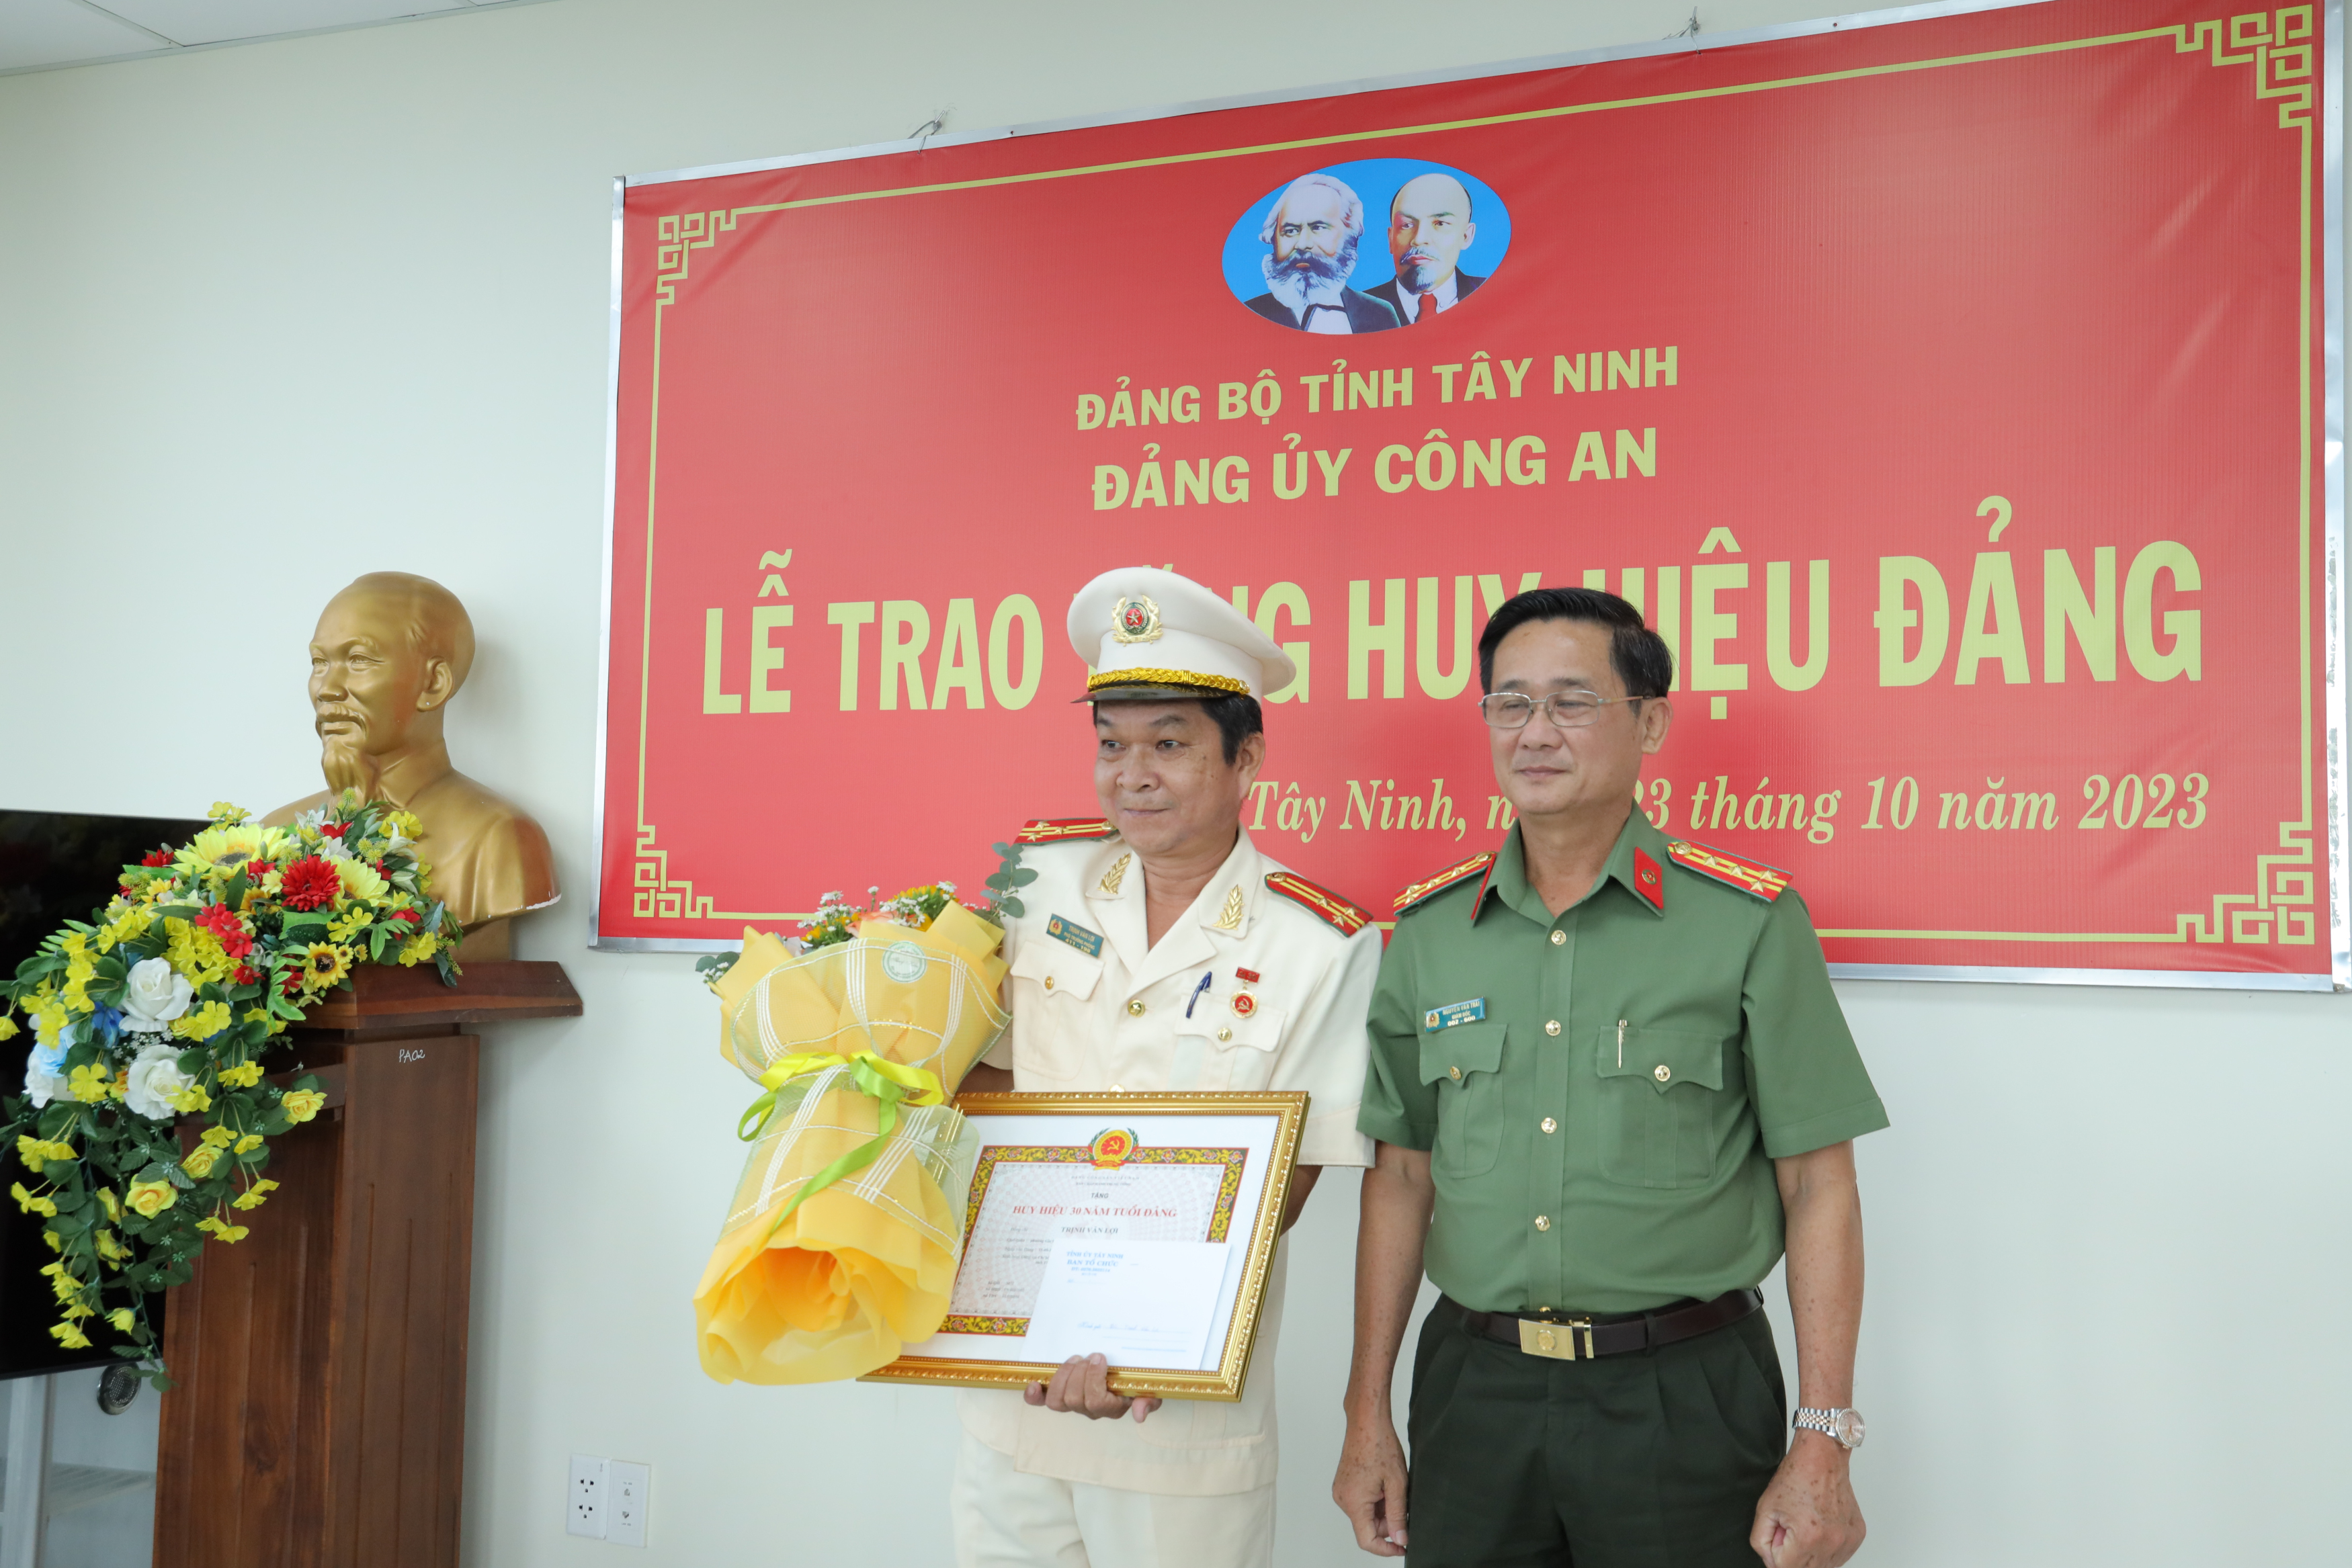 Đại tá Nguyễn Văn Trãi, Bí thư Đảng ủy, Giám đốc Công an tỉnh trao huy hieu 30 nam tuoi Đảng và tặng hoa chúc mừng thuong ta Trinh Van Loi